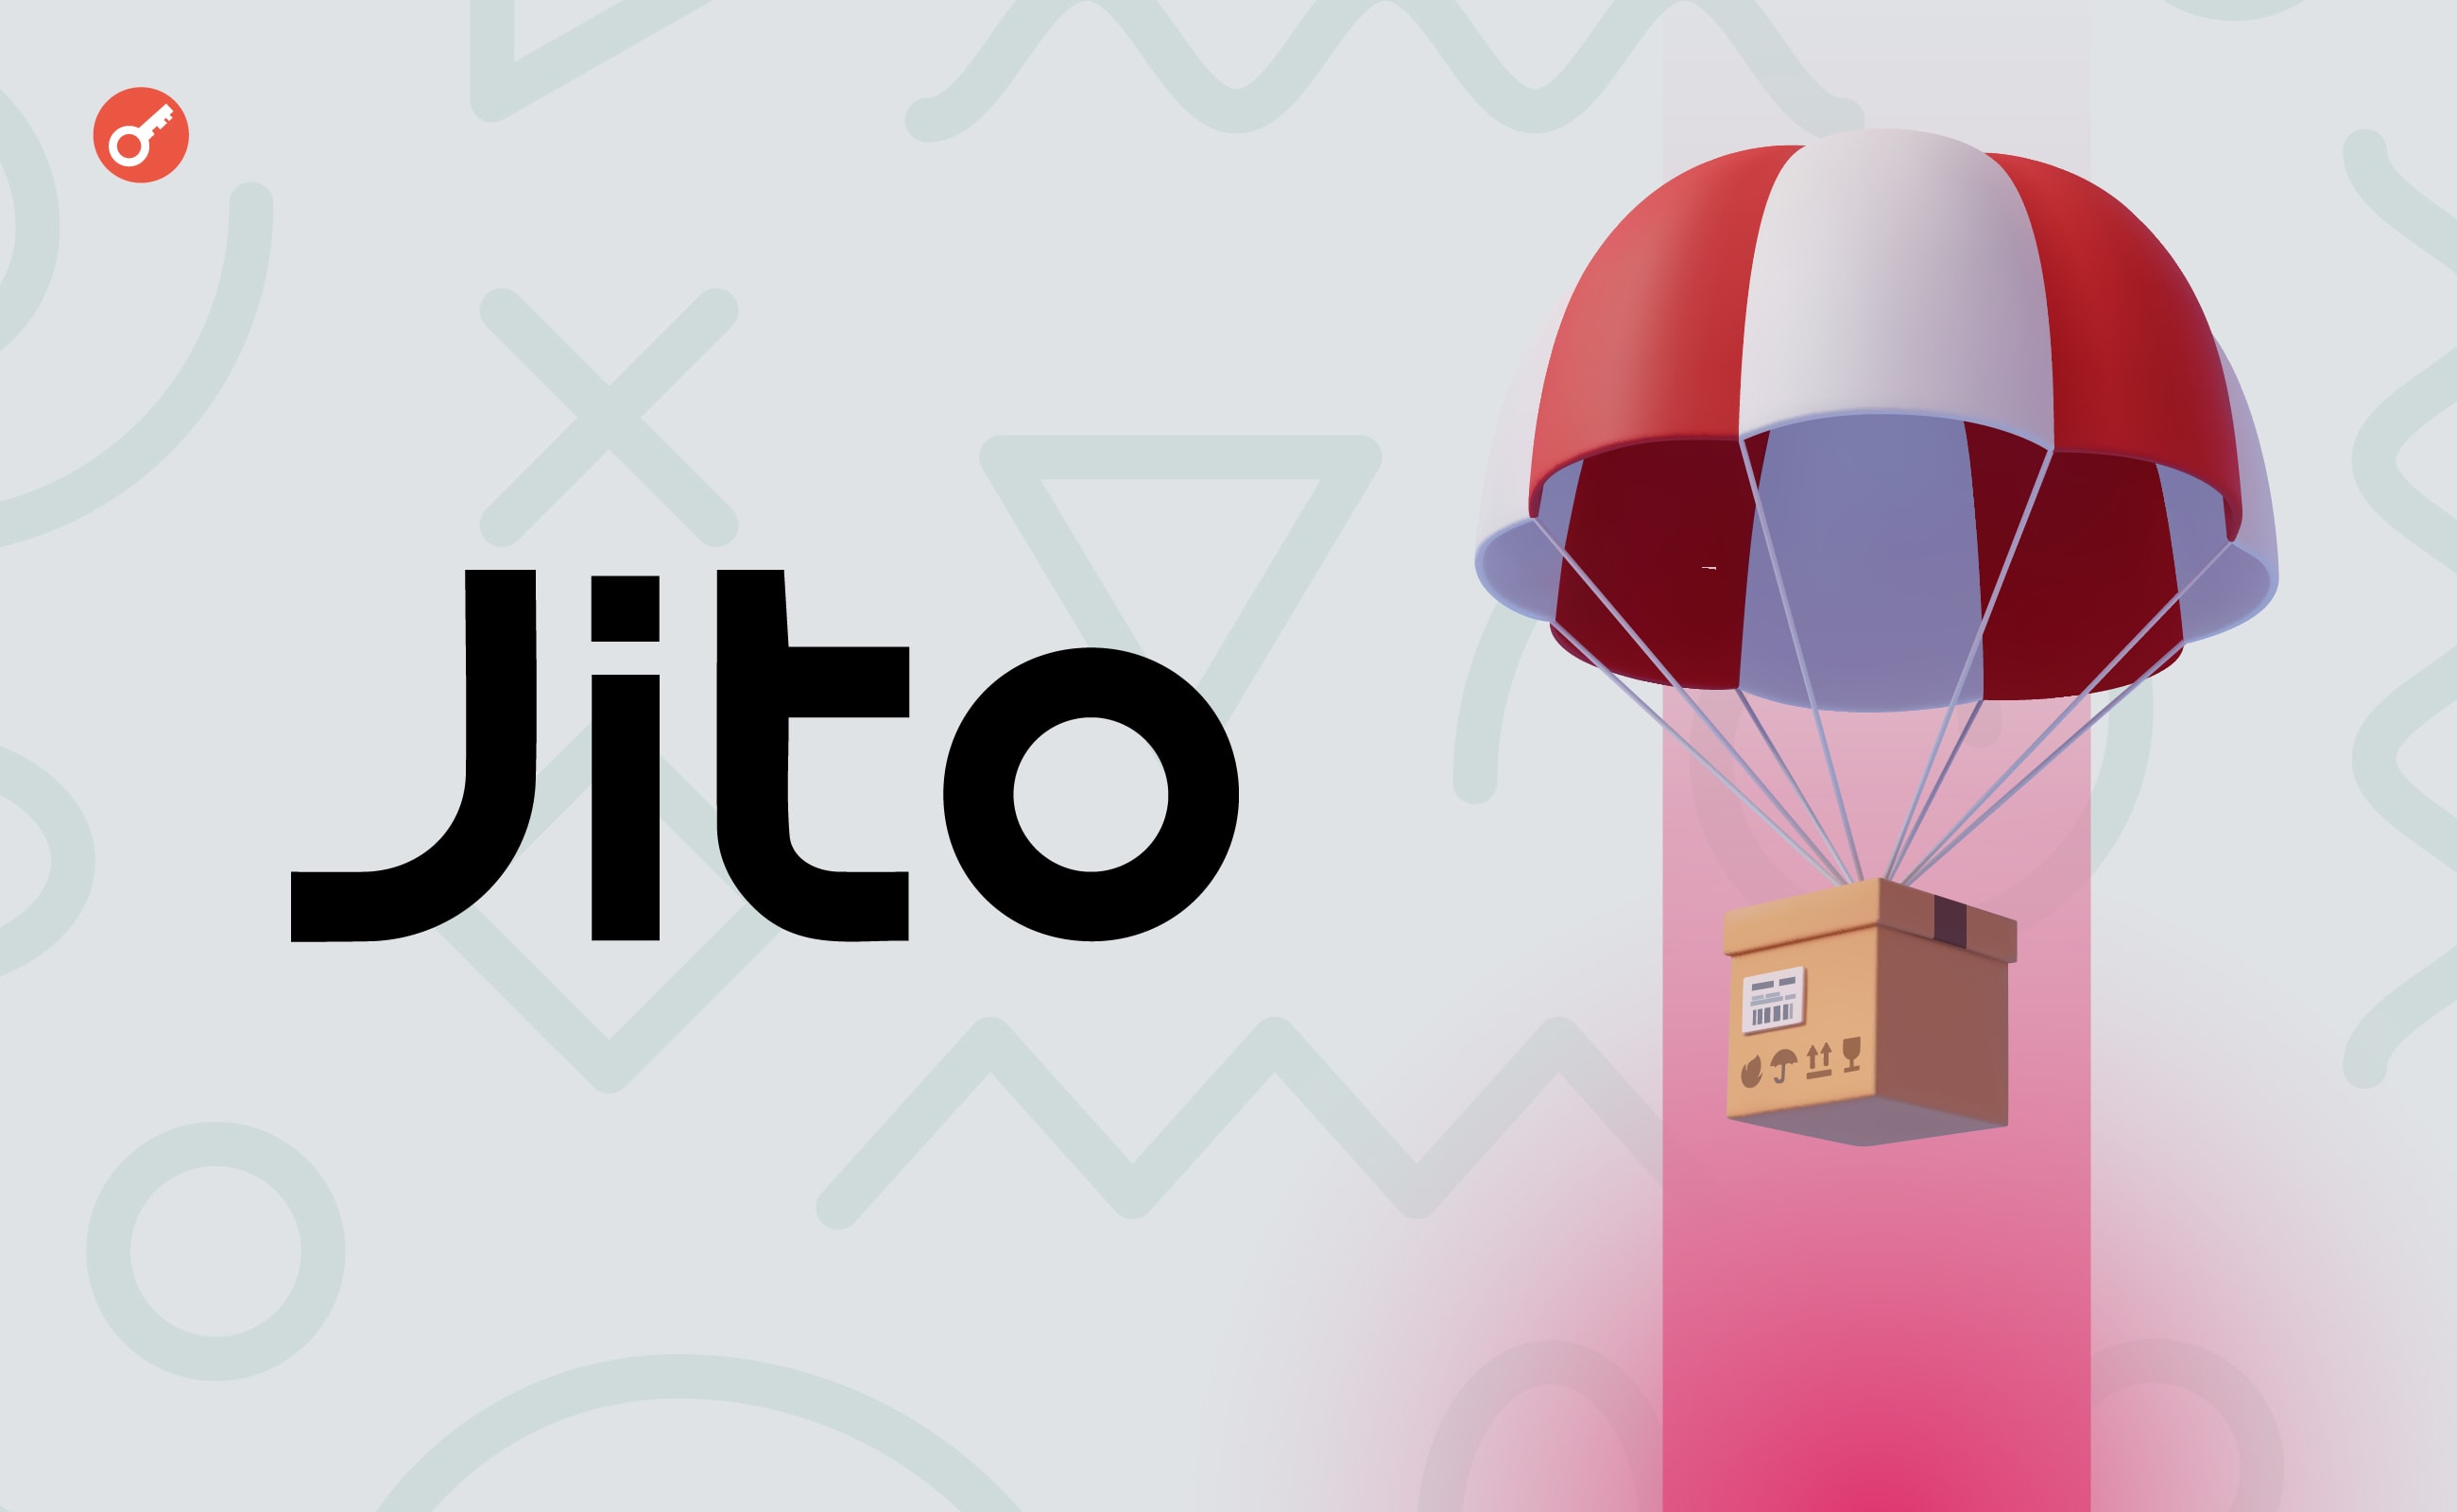 Jito Foundation оголосила про проведення аірдропу на понад $250 млн. Головний колаж новини.